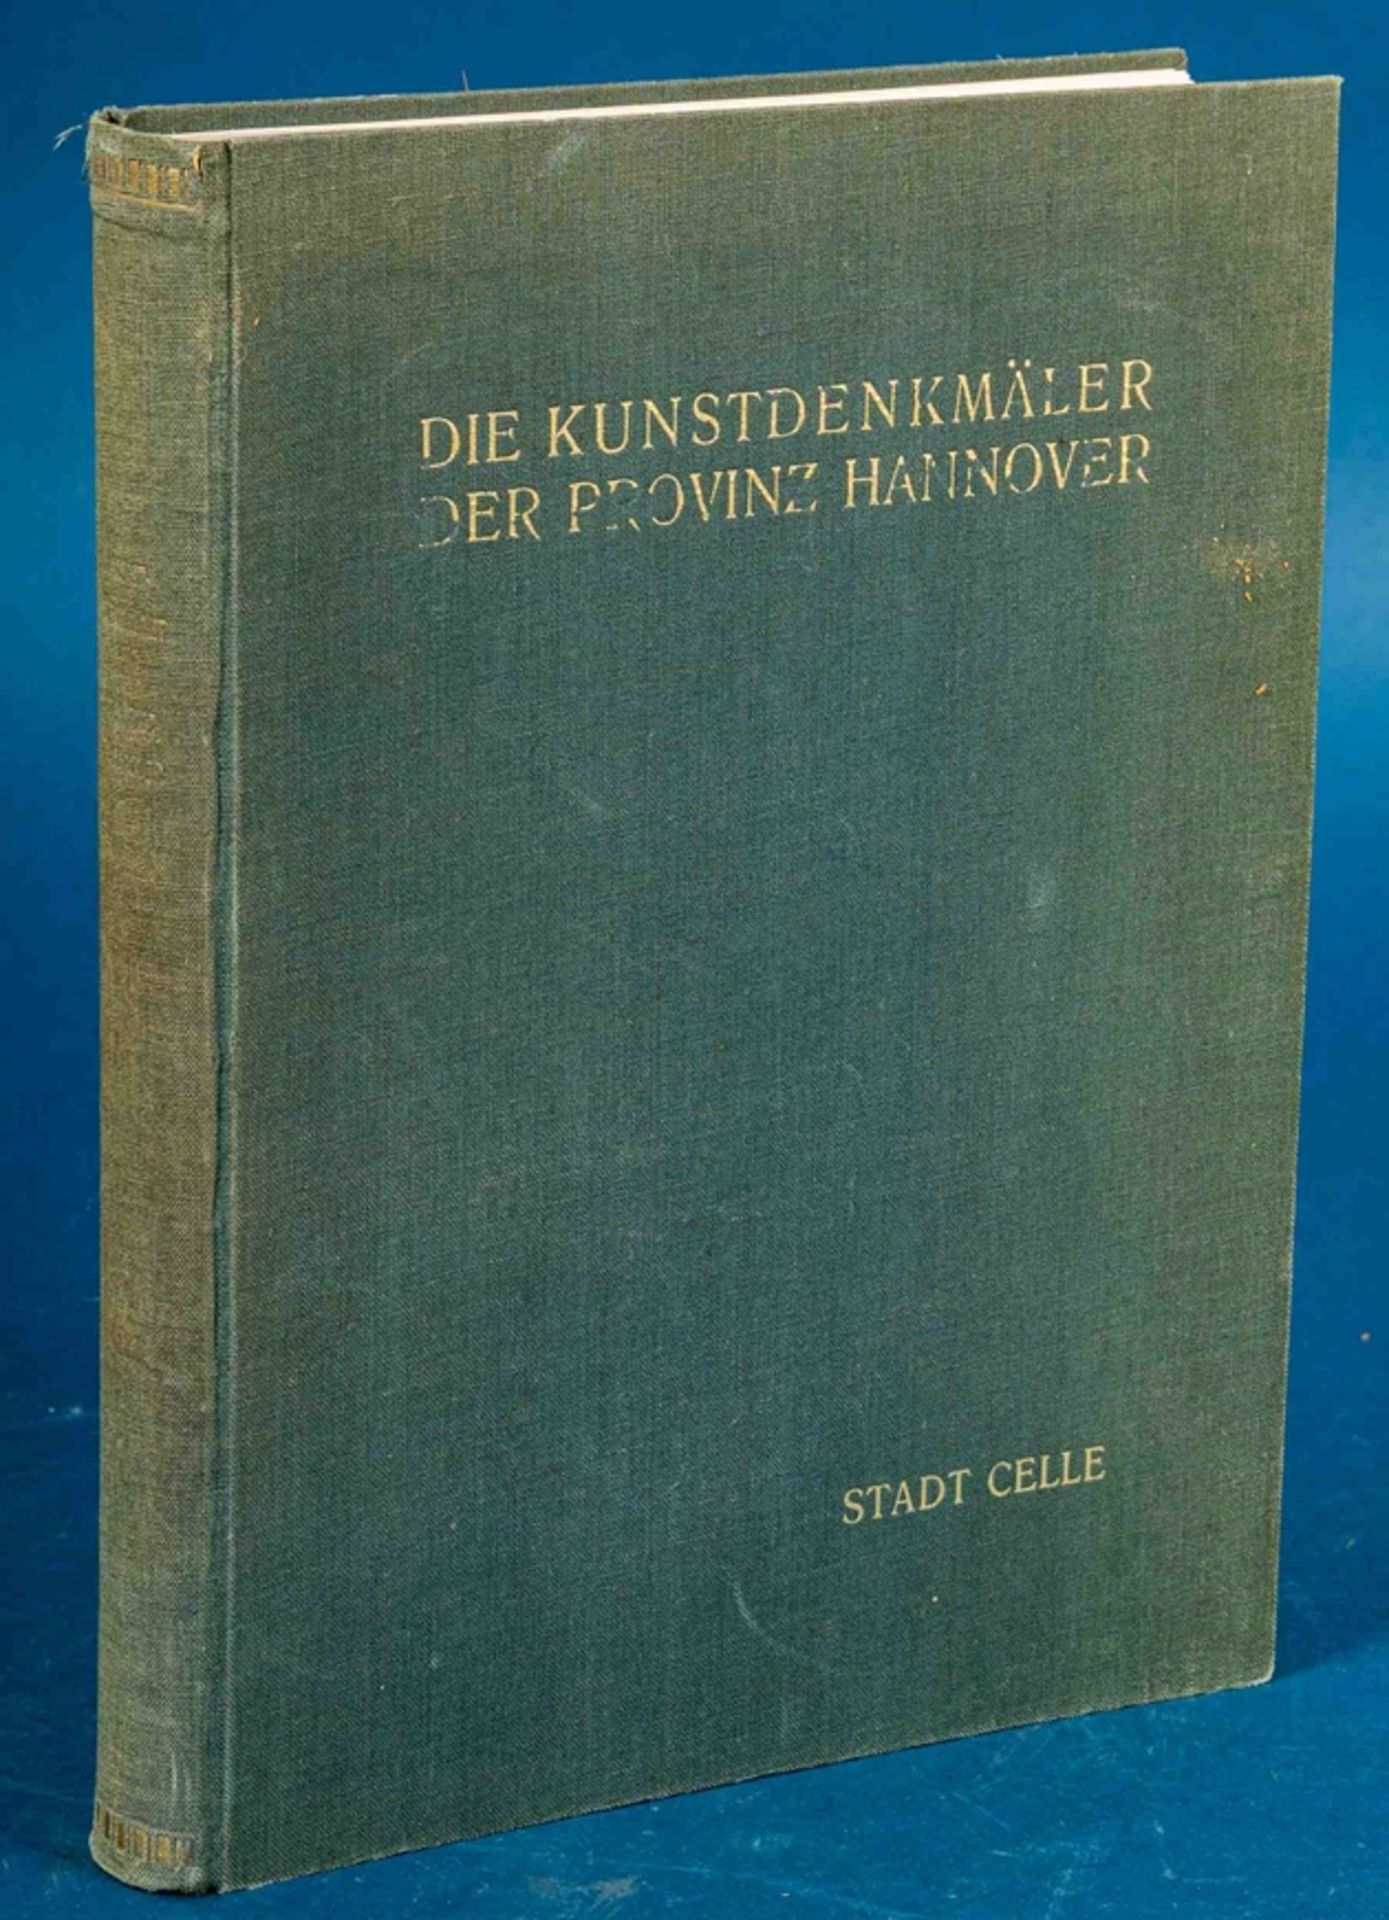 Die Kunstdenkmäler der Provinz Hannover "Stadt Celle" von 1937. Einband mit deu